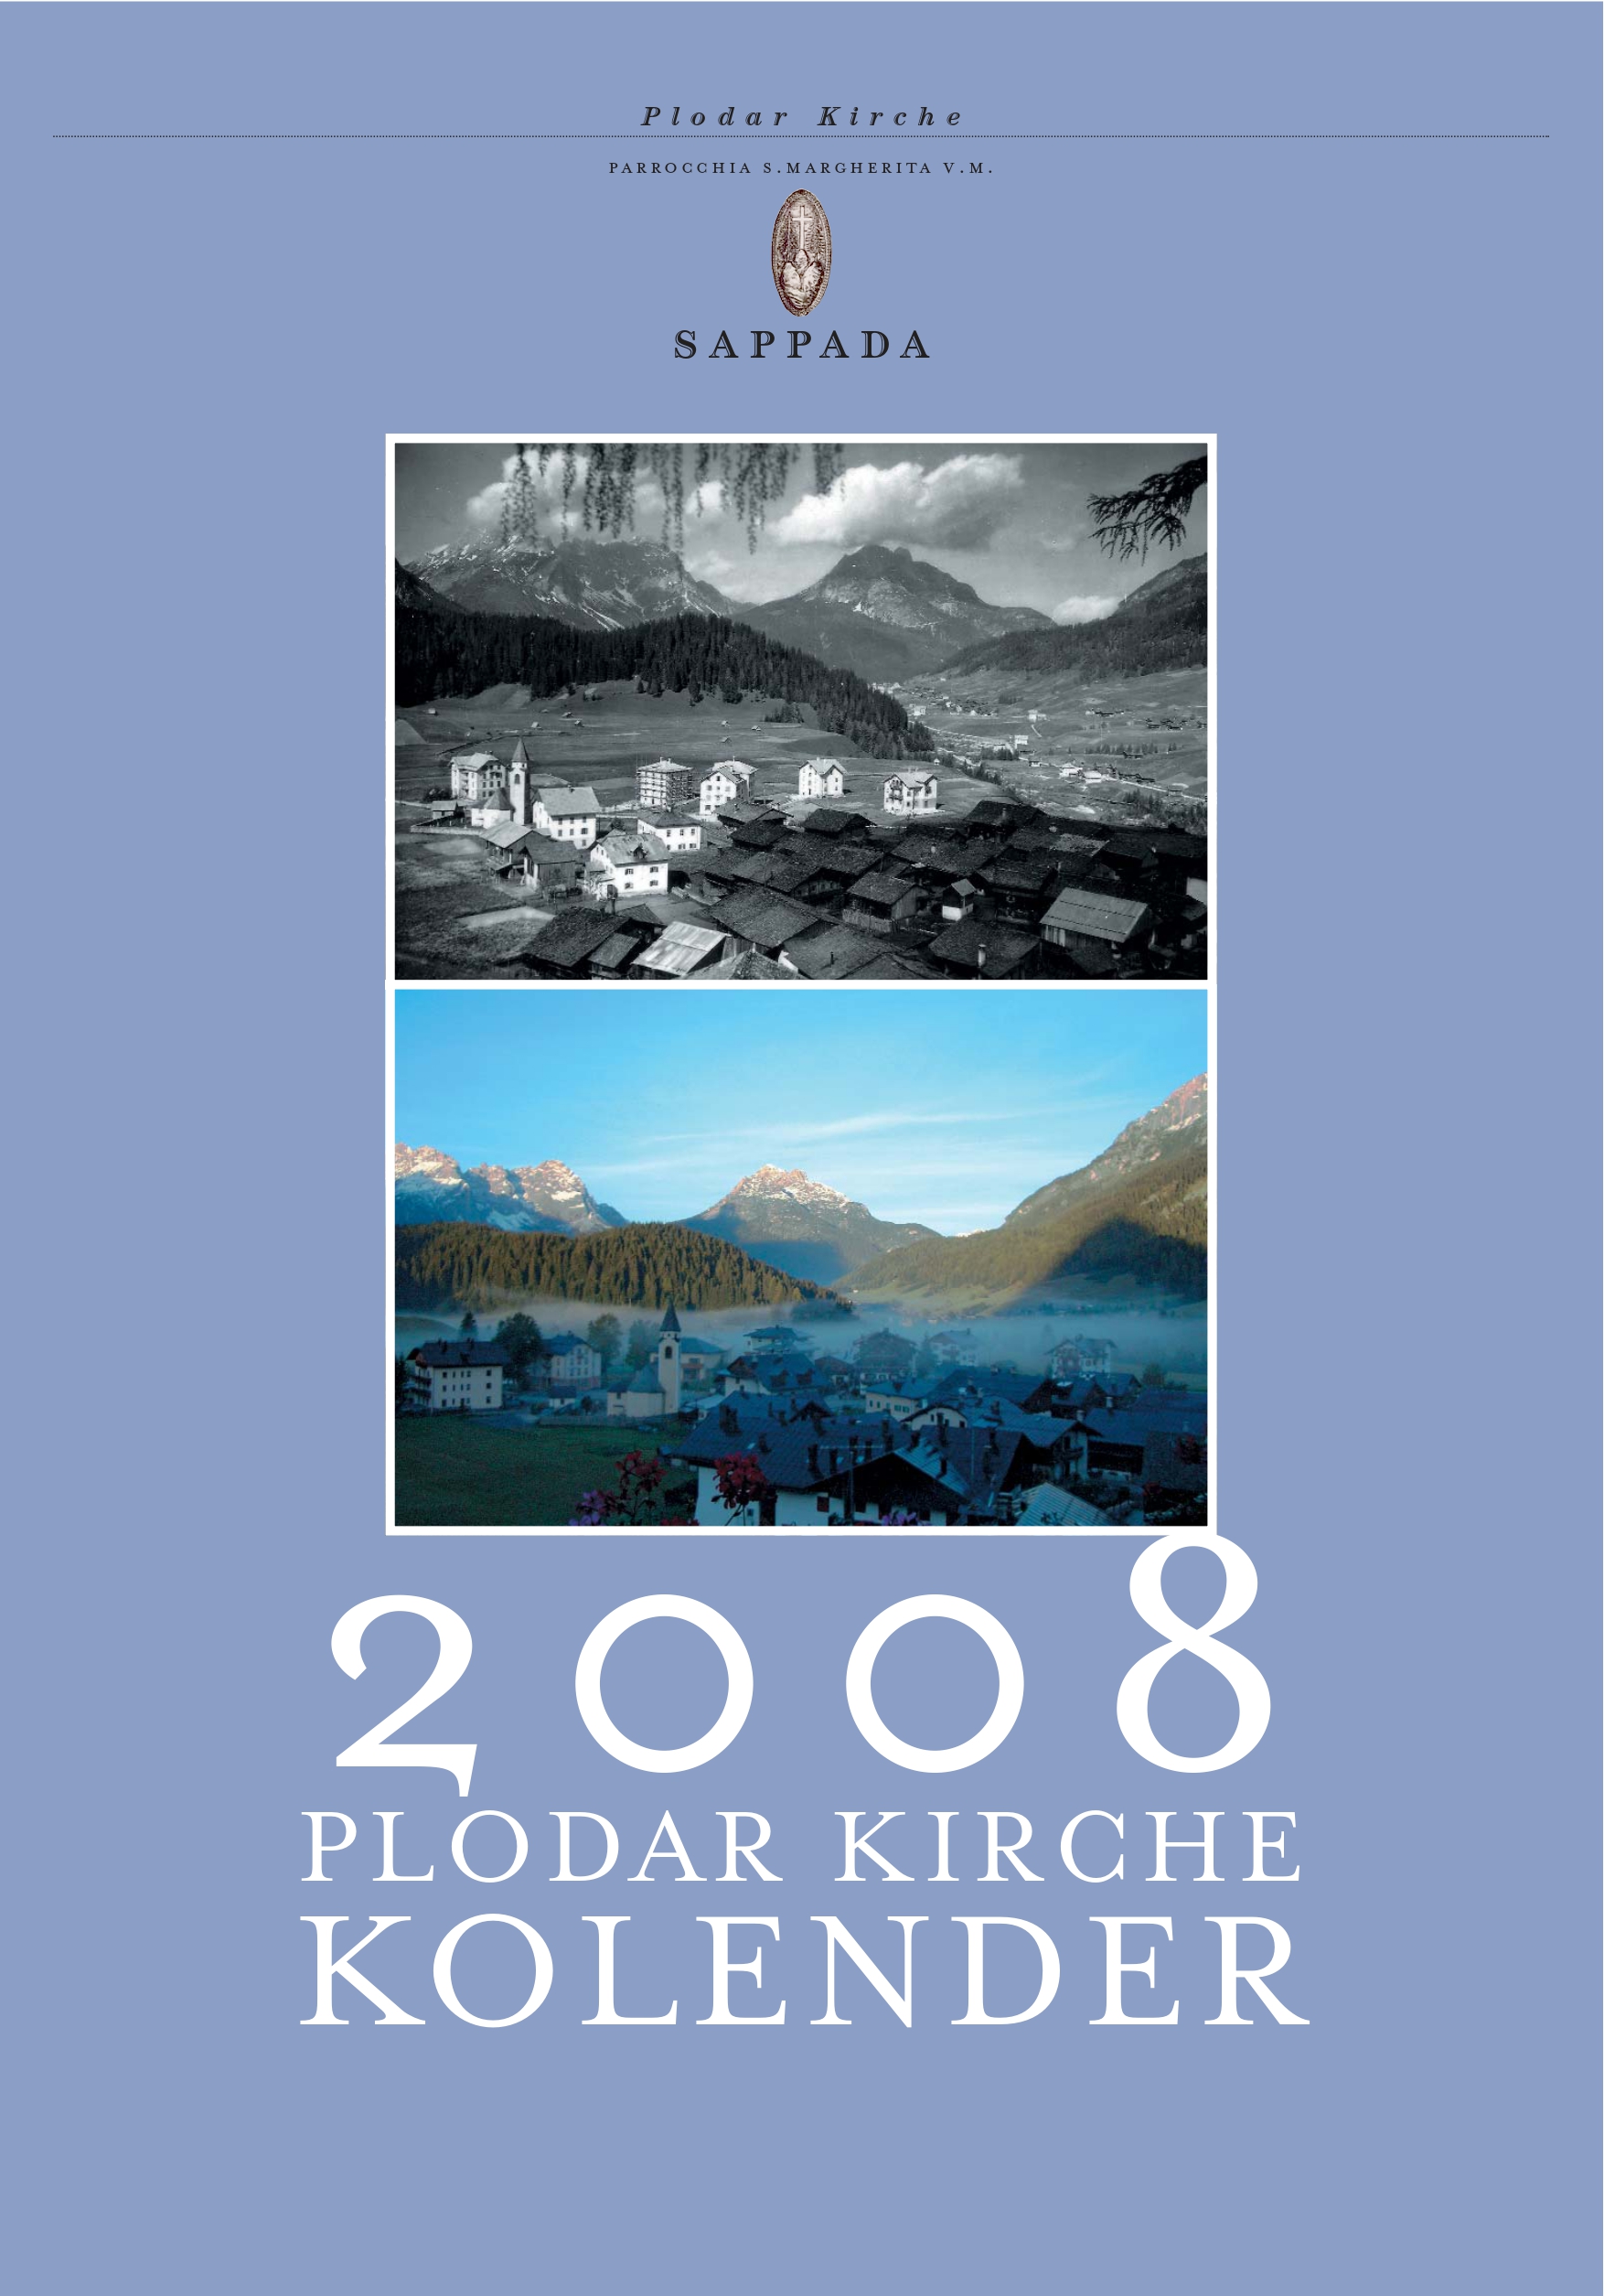 Plodar-kirche-kolender-2008